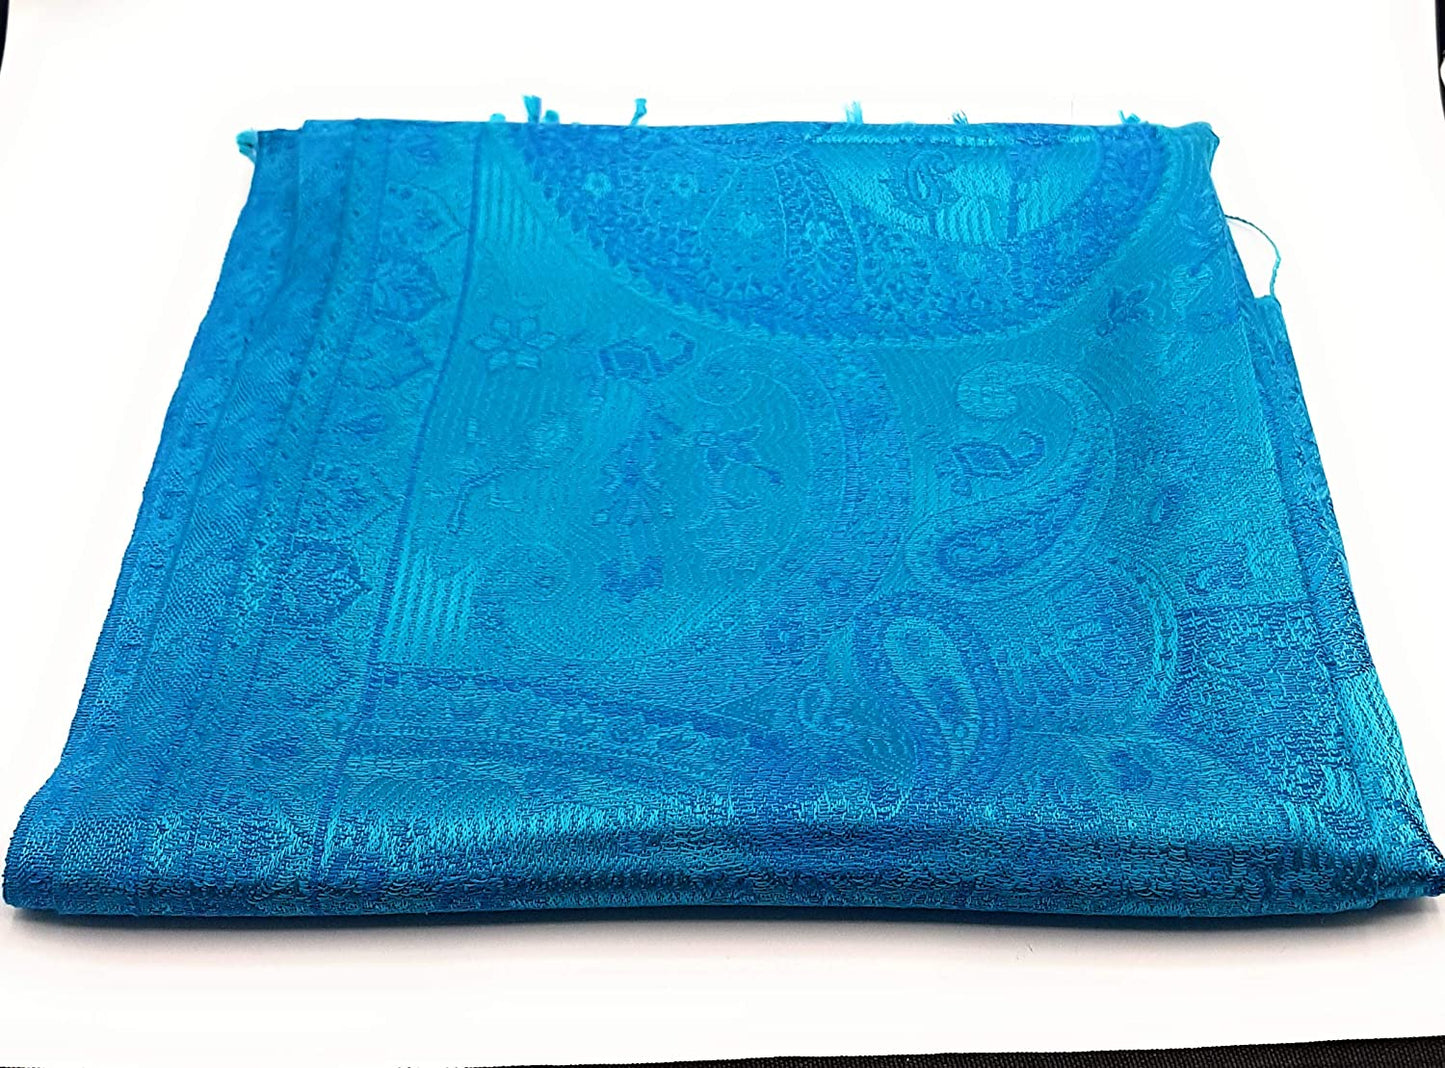 Indischer Seidenschal Schal 100% Seide Jacquard gewebt elegante Farben mit Fransen 55 x 200 cm Indische/Paisley Muster Seidentuch - VIELE MUSTER